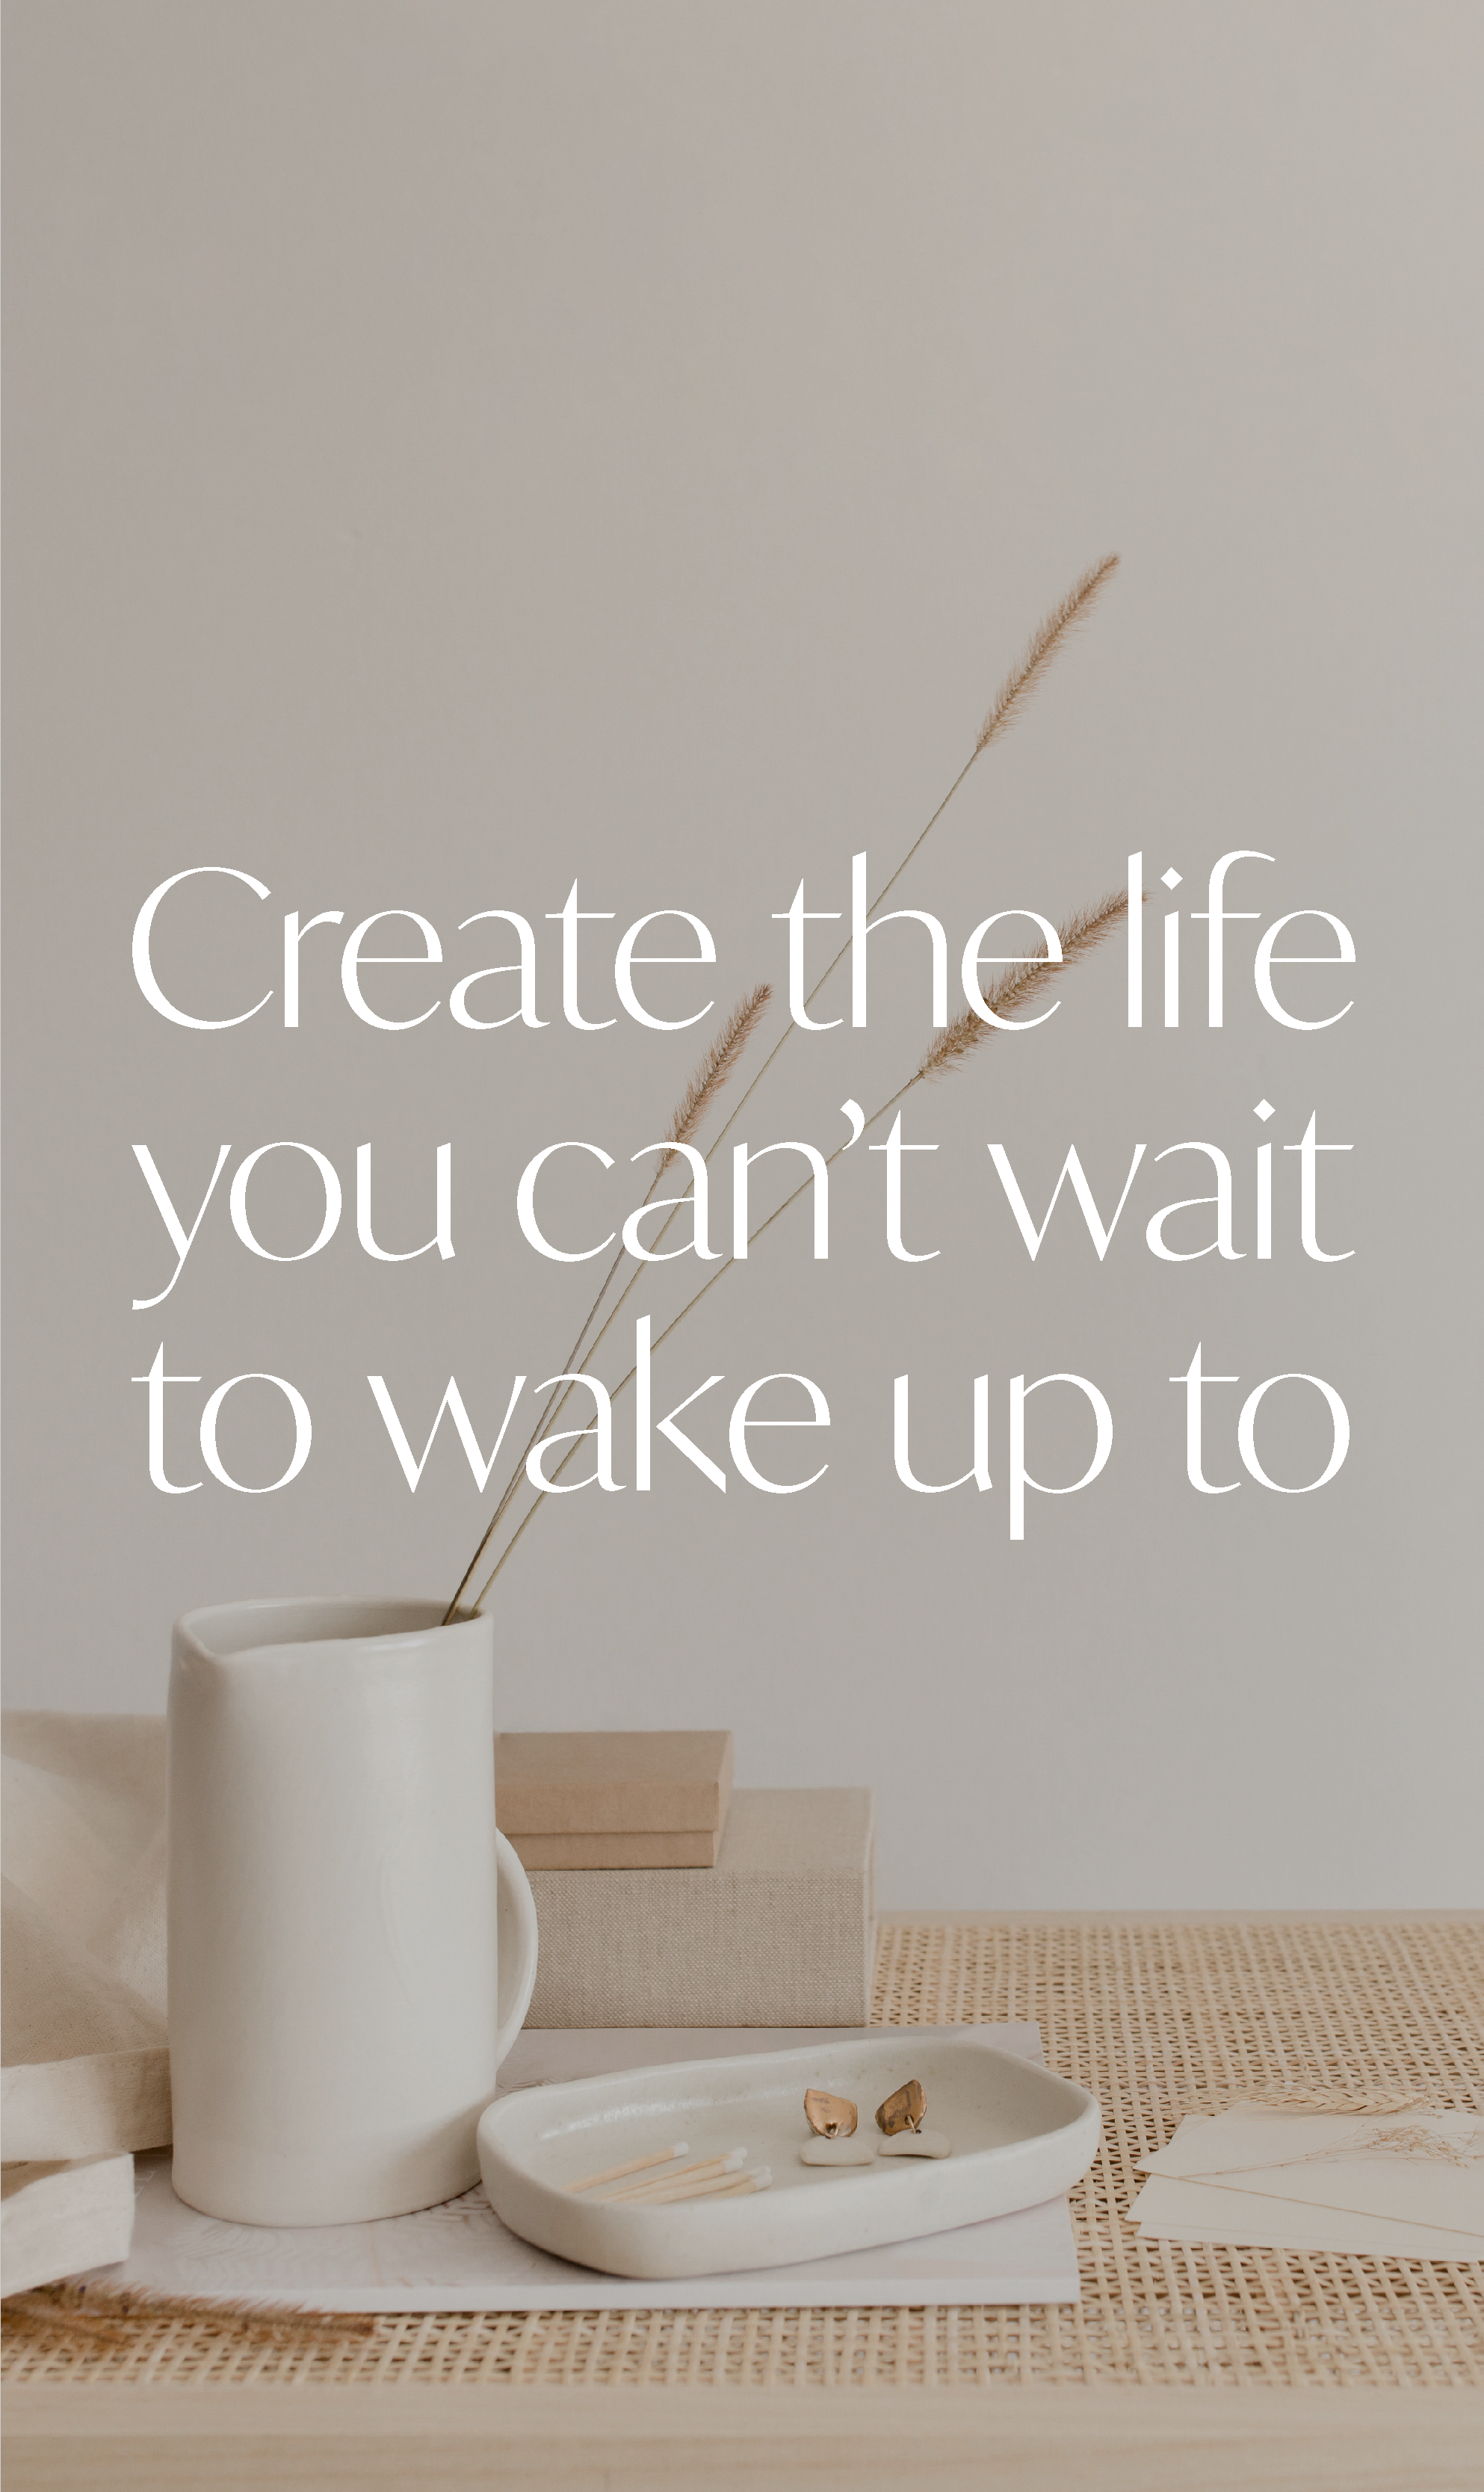 Text "Create the life you can't wait to wake up to" auf verdunkeltem Foto verschiedener Gegenstände in Creme- und Beige-Farben.